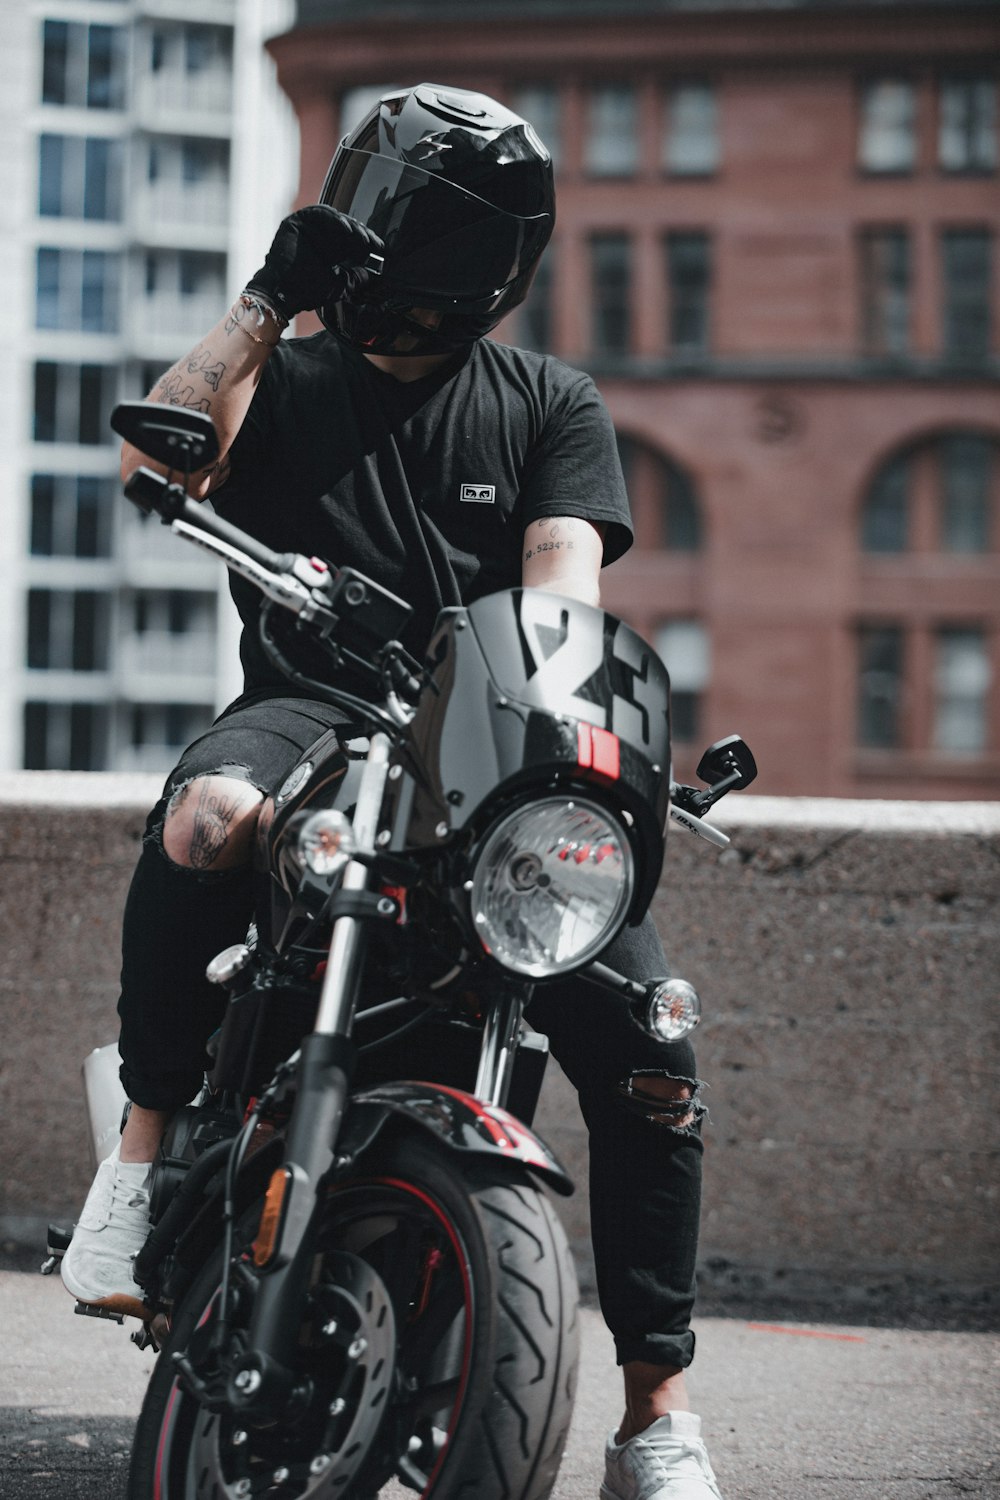 Mann in schwarzem Helm Motorrad fährt Motorrad